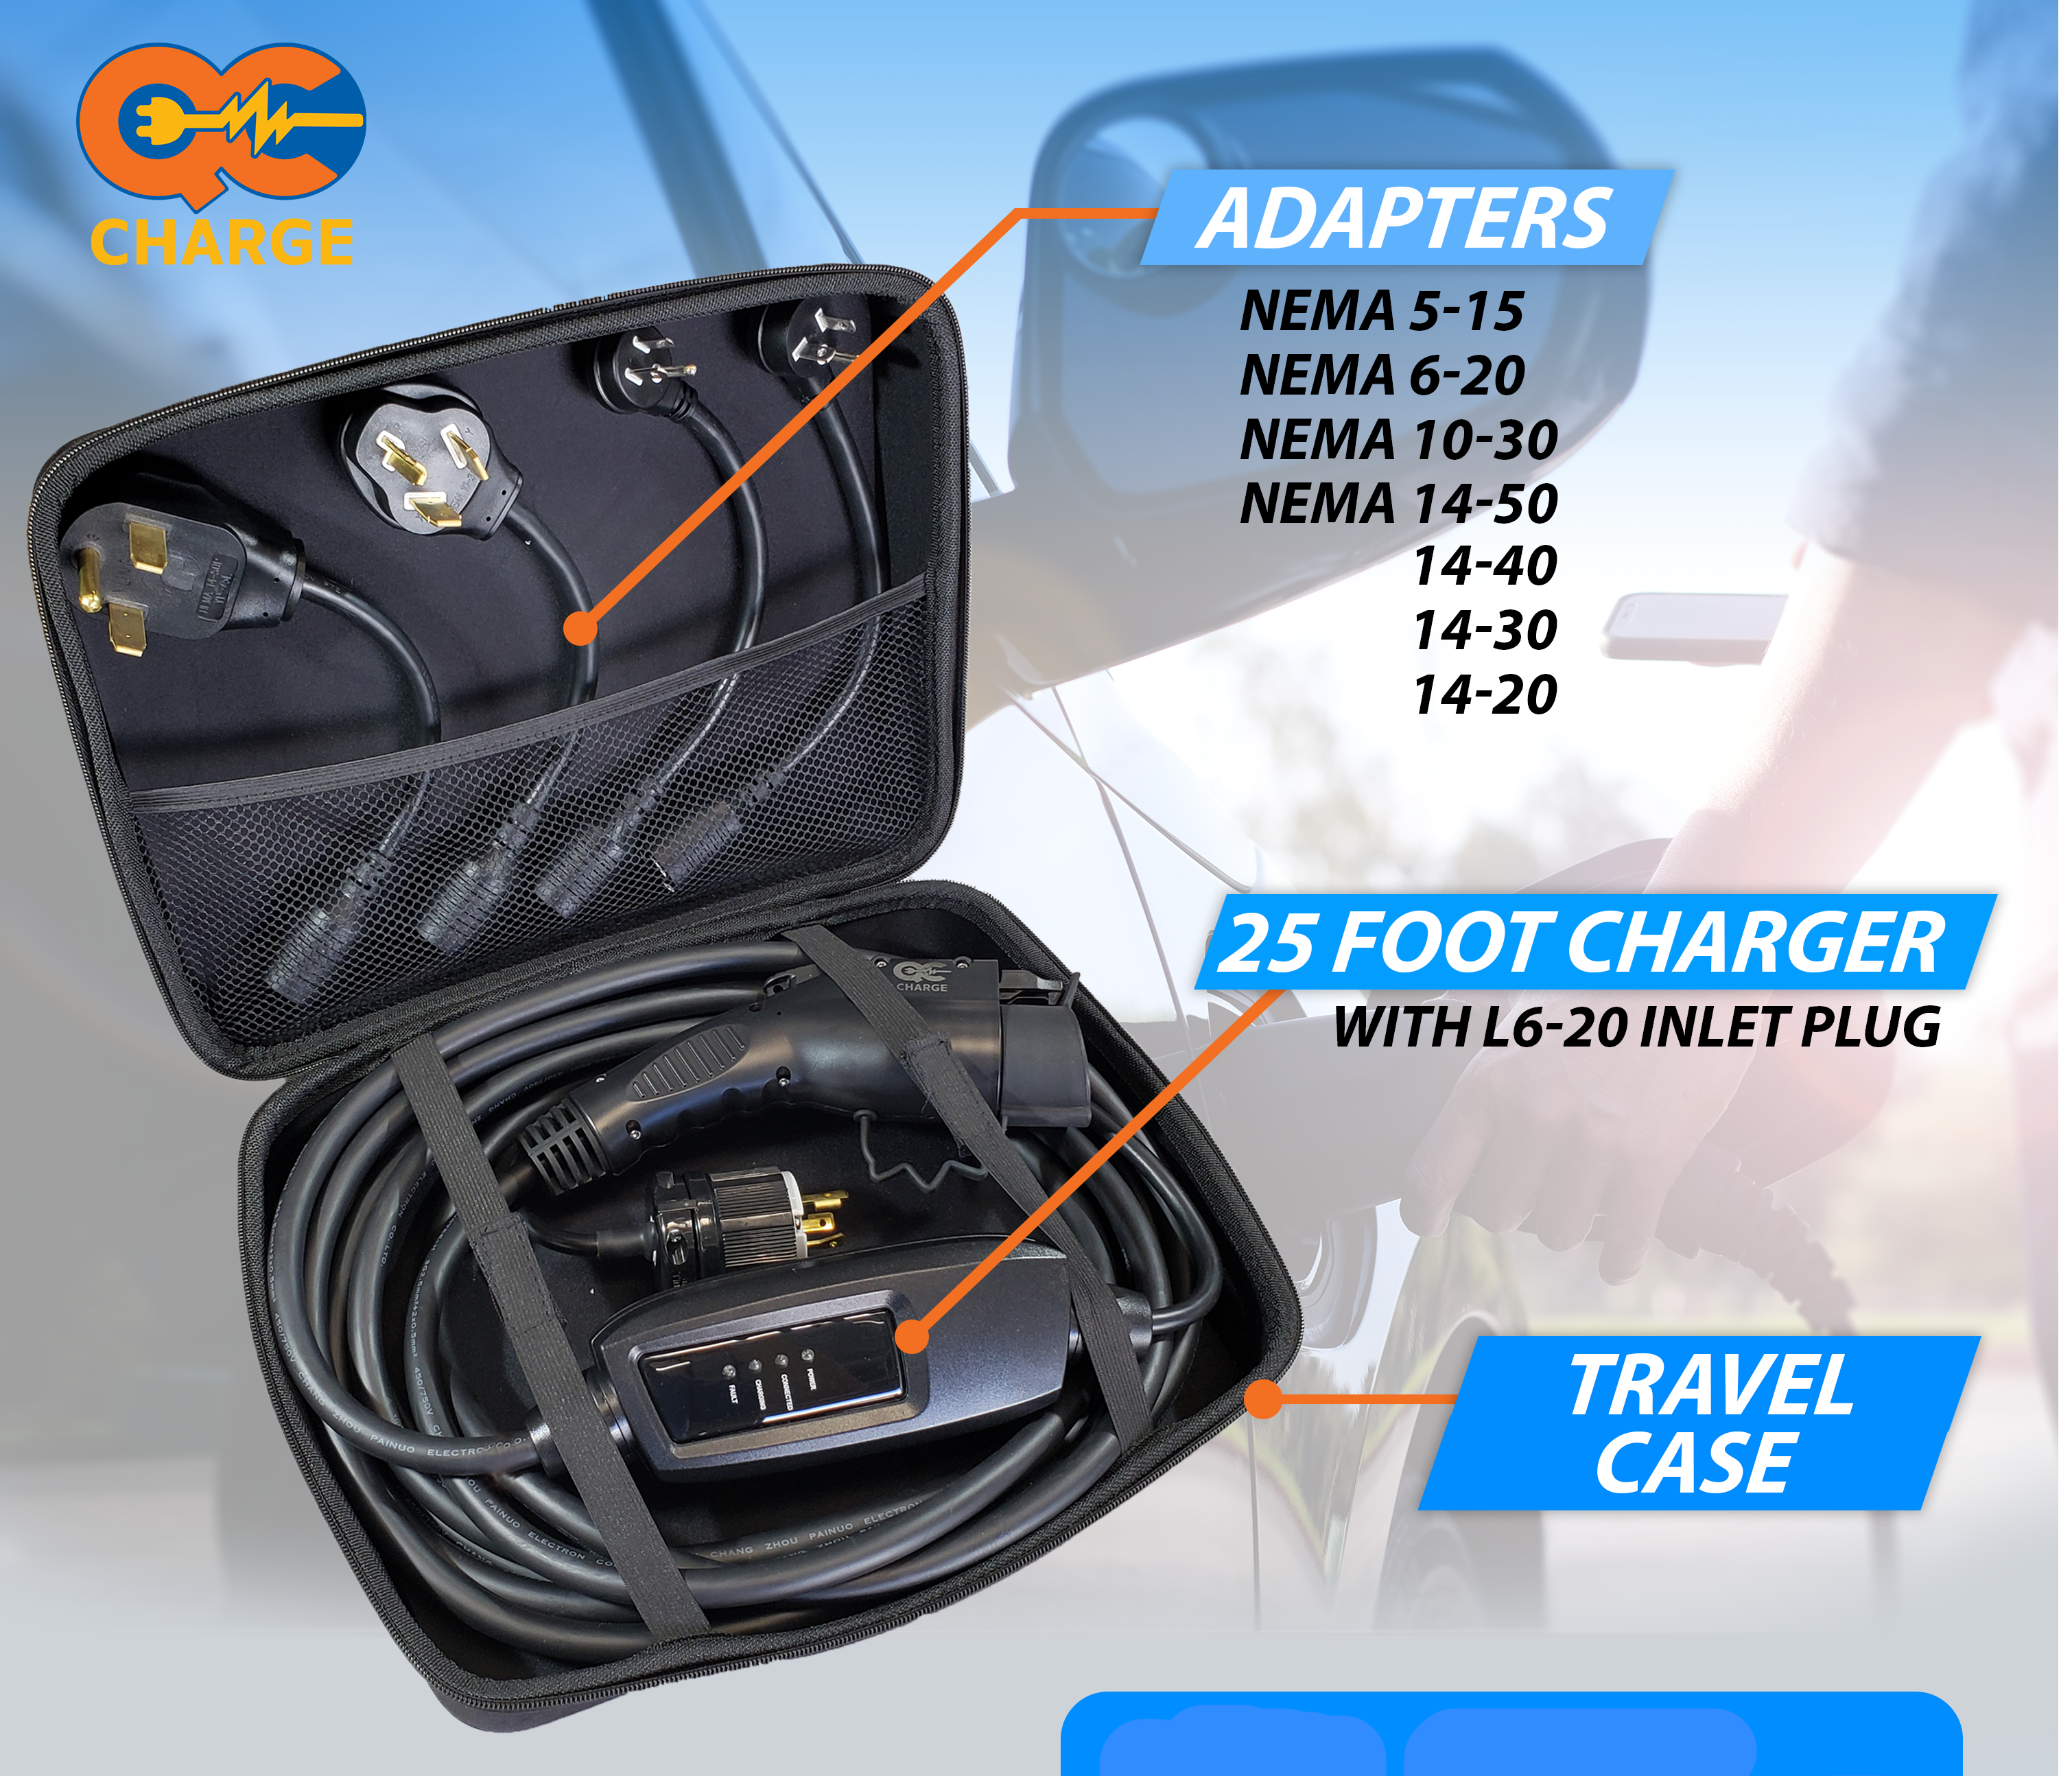 Go-Cable™ Level 2 Tri-Voltage 120V-208V-240V J1772 Charger